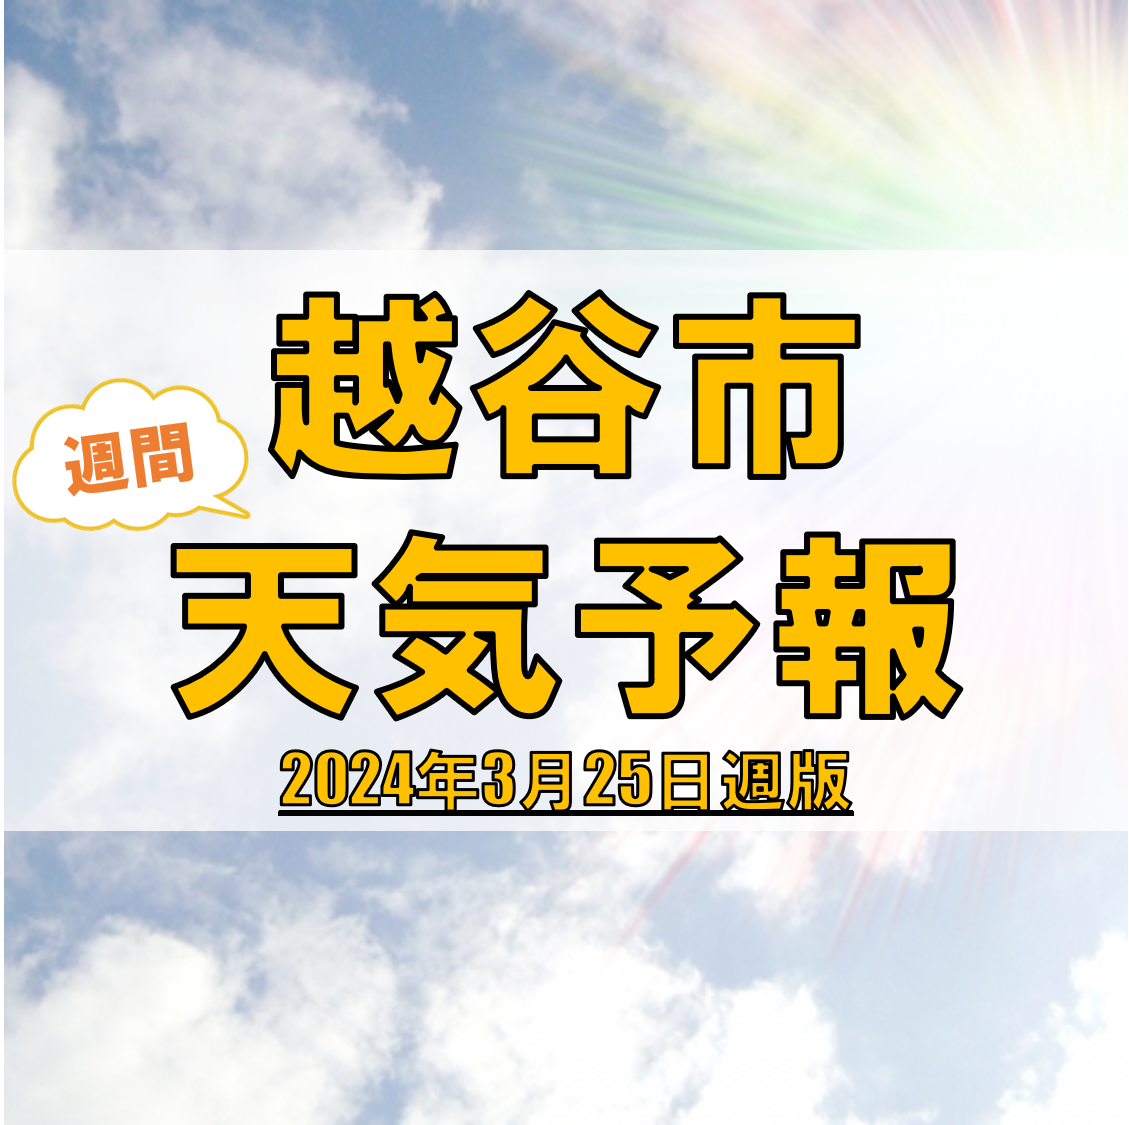 越谷市の天気 週間予報【2024年3月25日週】